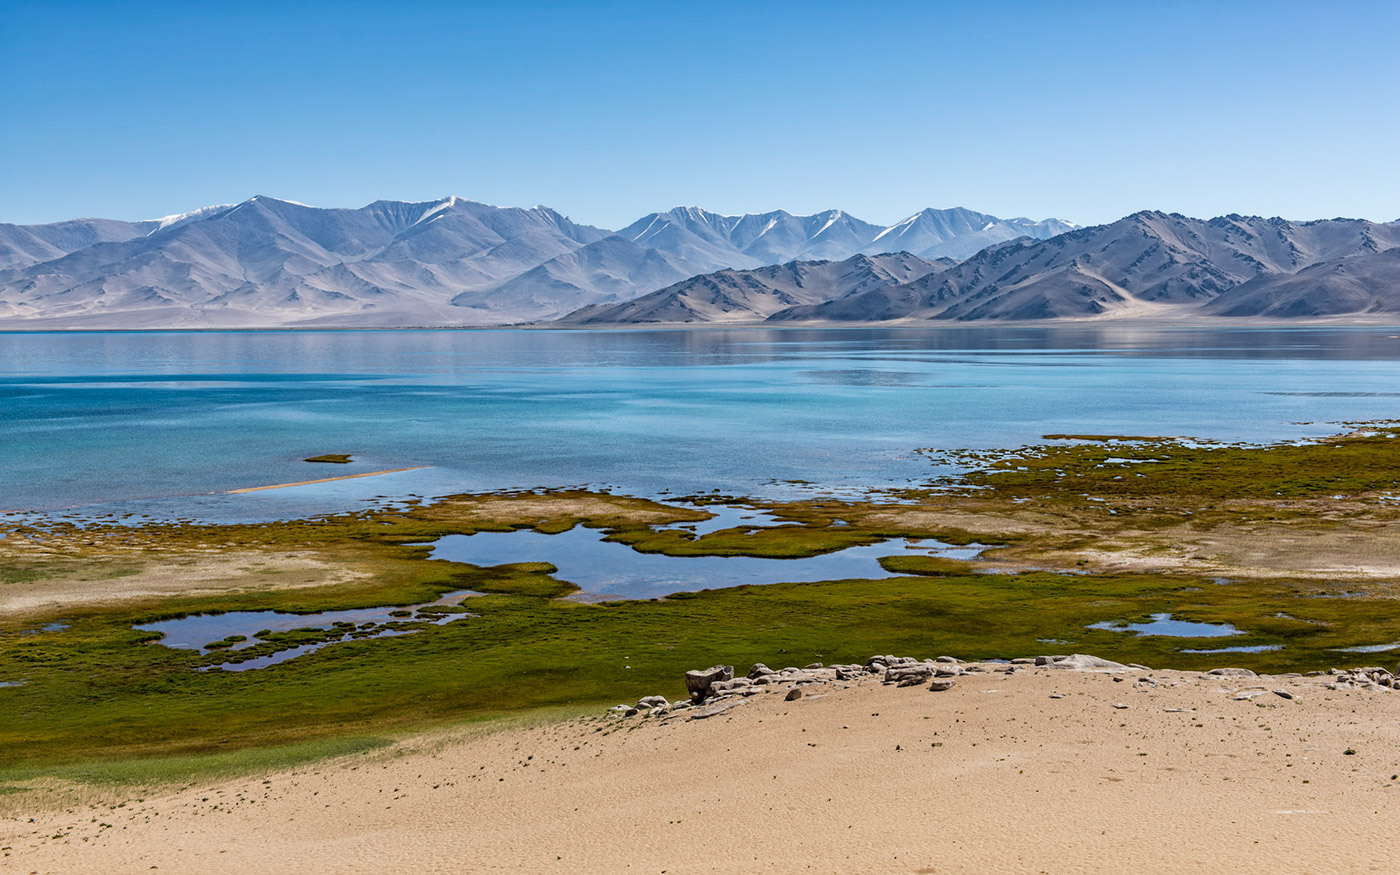 Karakul Lake - the bigest lake in Tajikistan